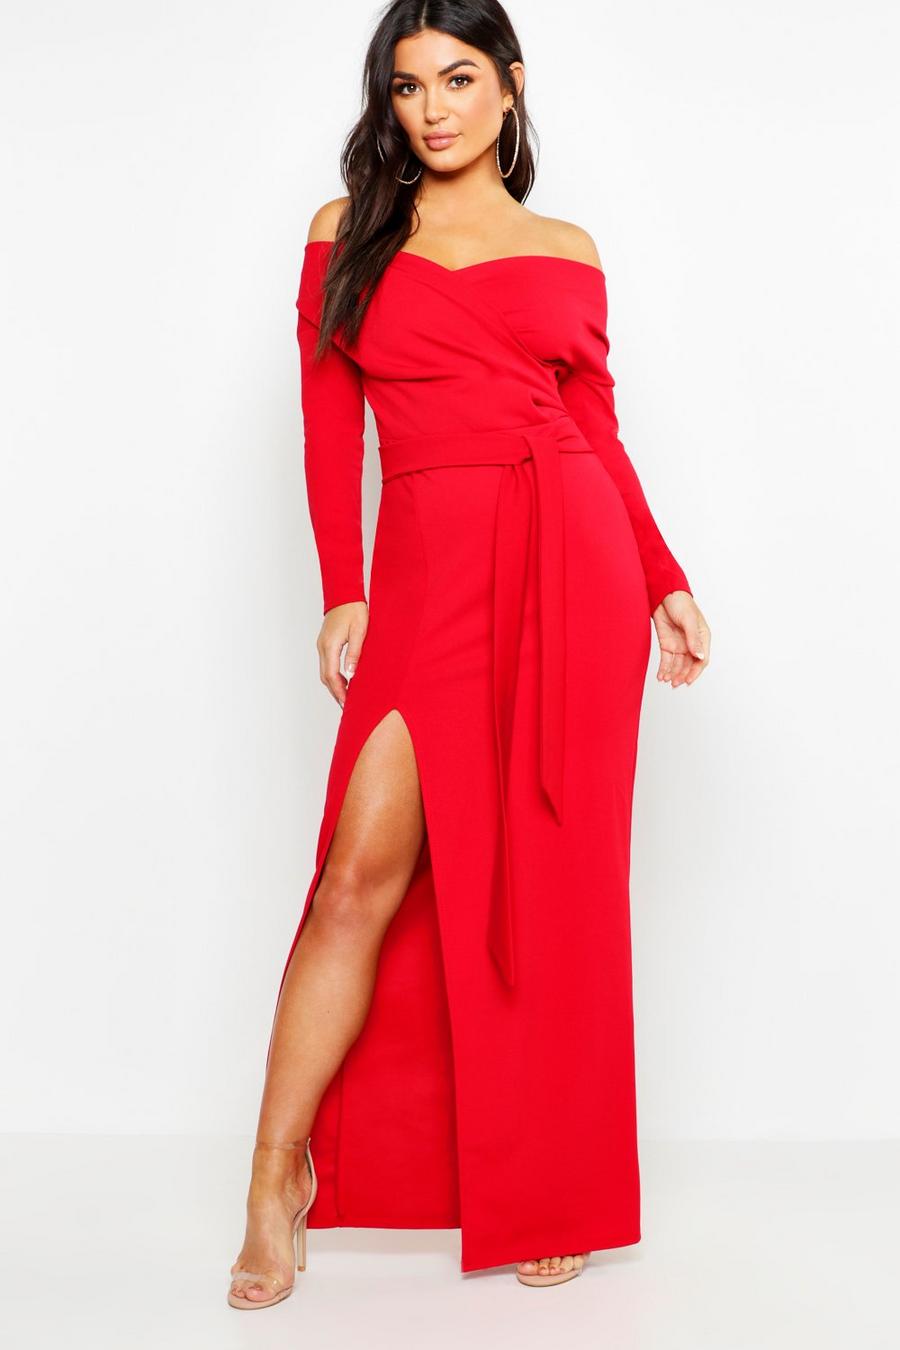 Red שמלת שושבינה מקסי חשופת כתפיים עם שסע